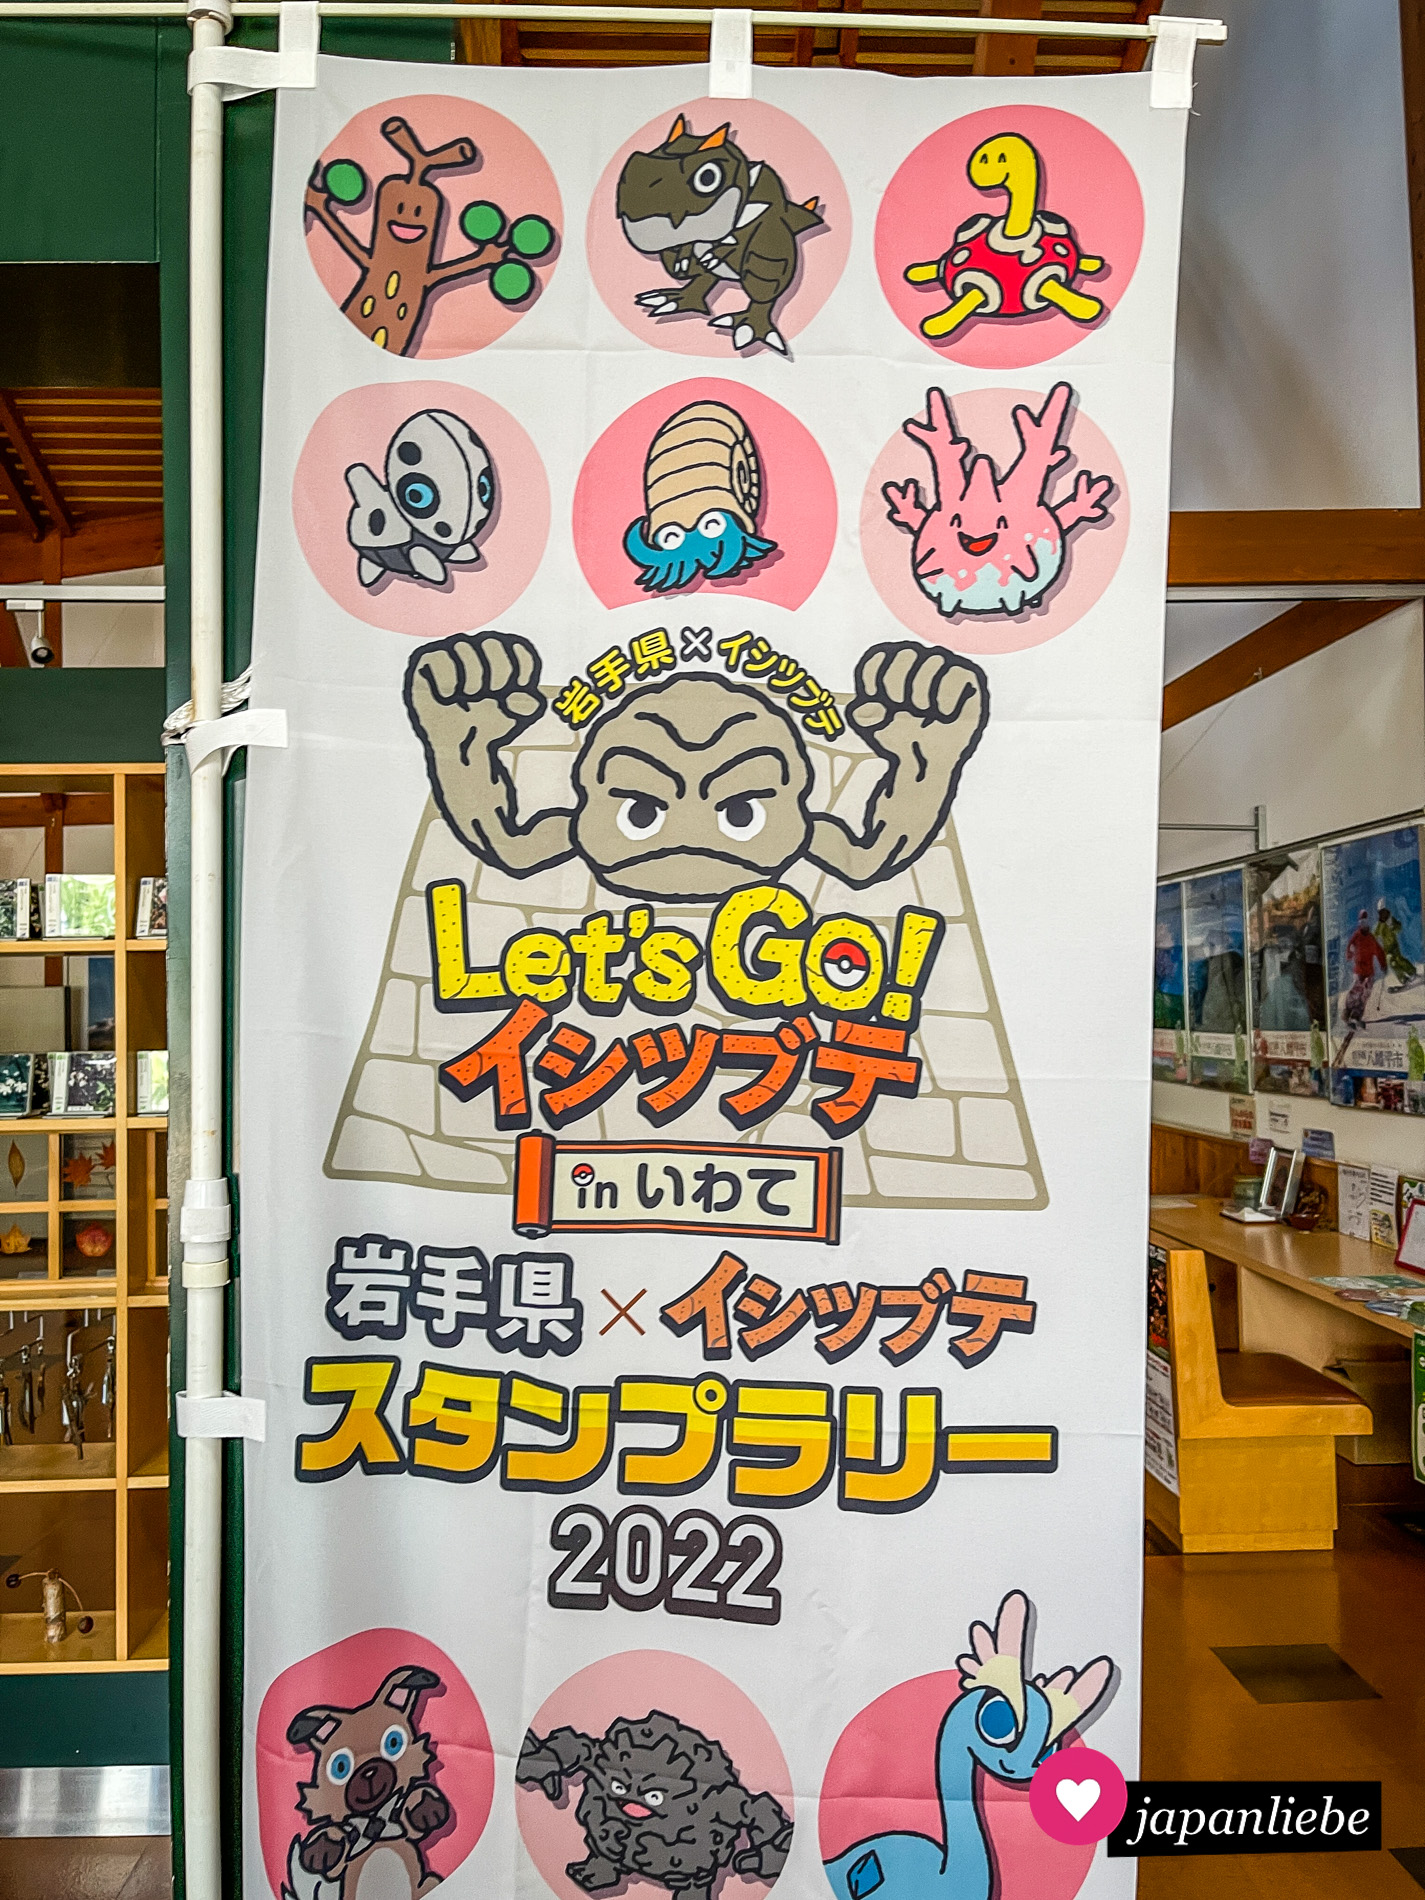 Ein Werbebanner für eine Sammelstempel-Rallye rund um den Pokémon Botschafter der Präfektur Iwate Kleinstein.